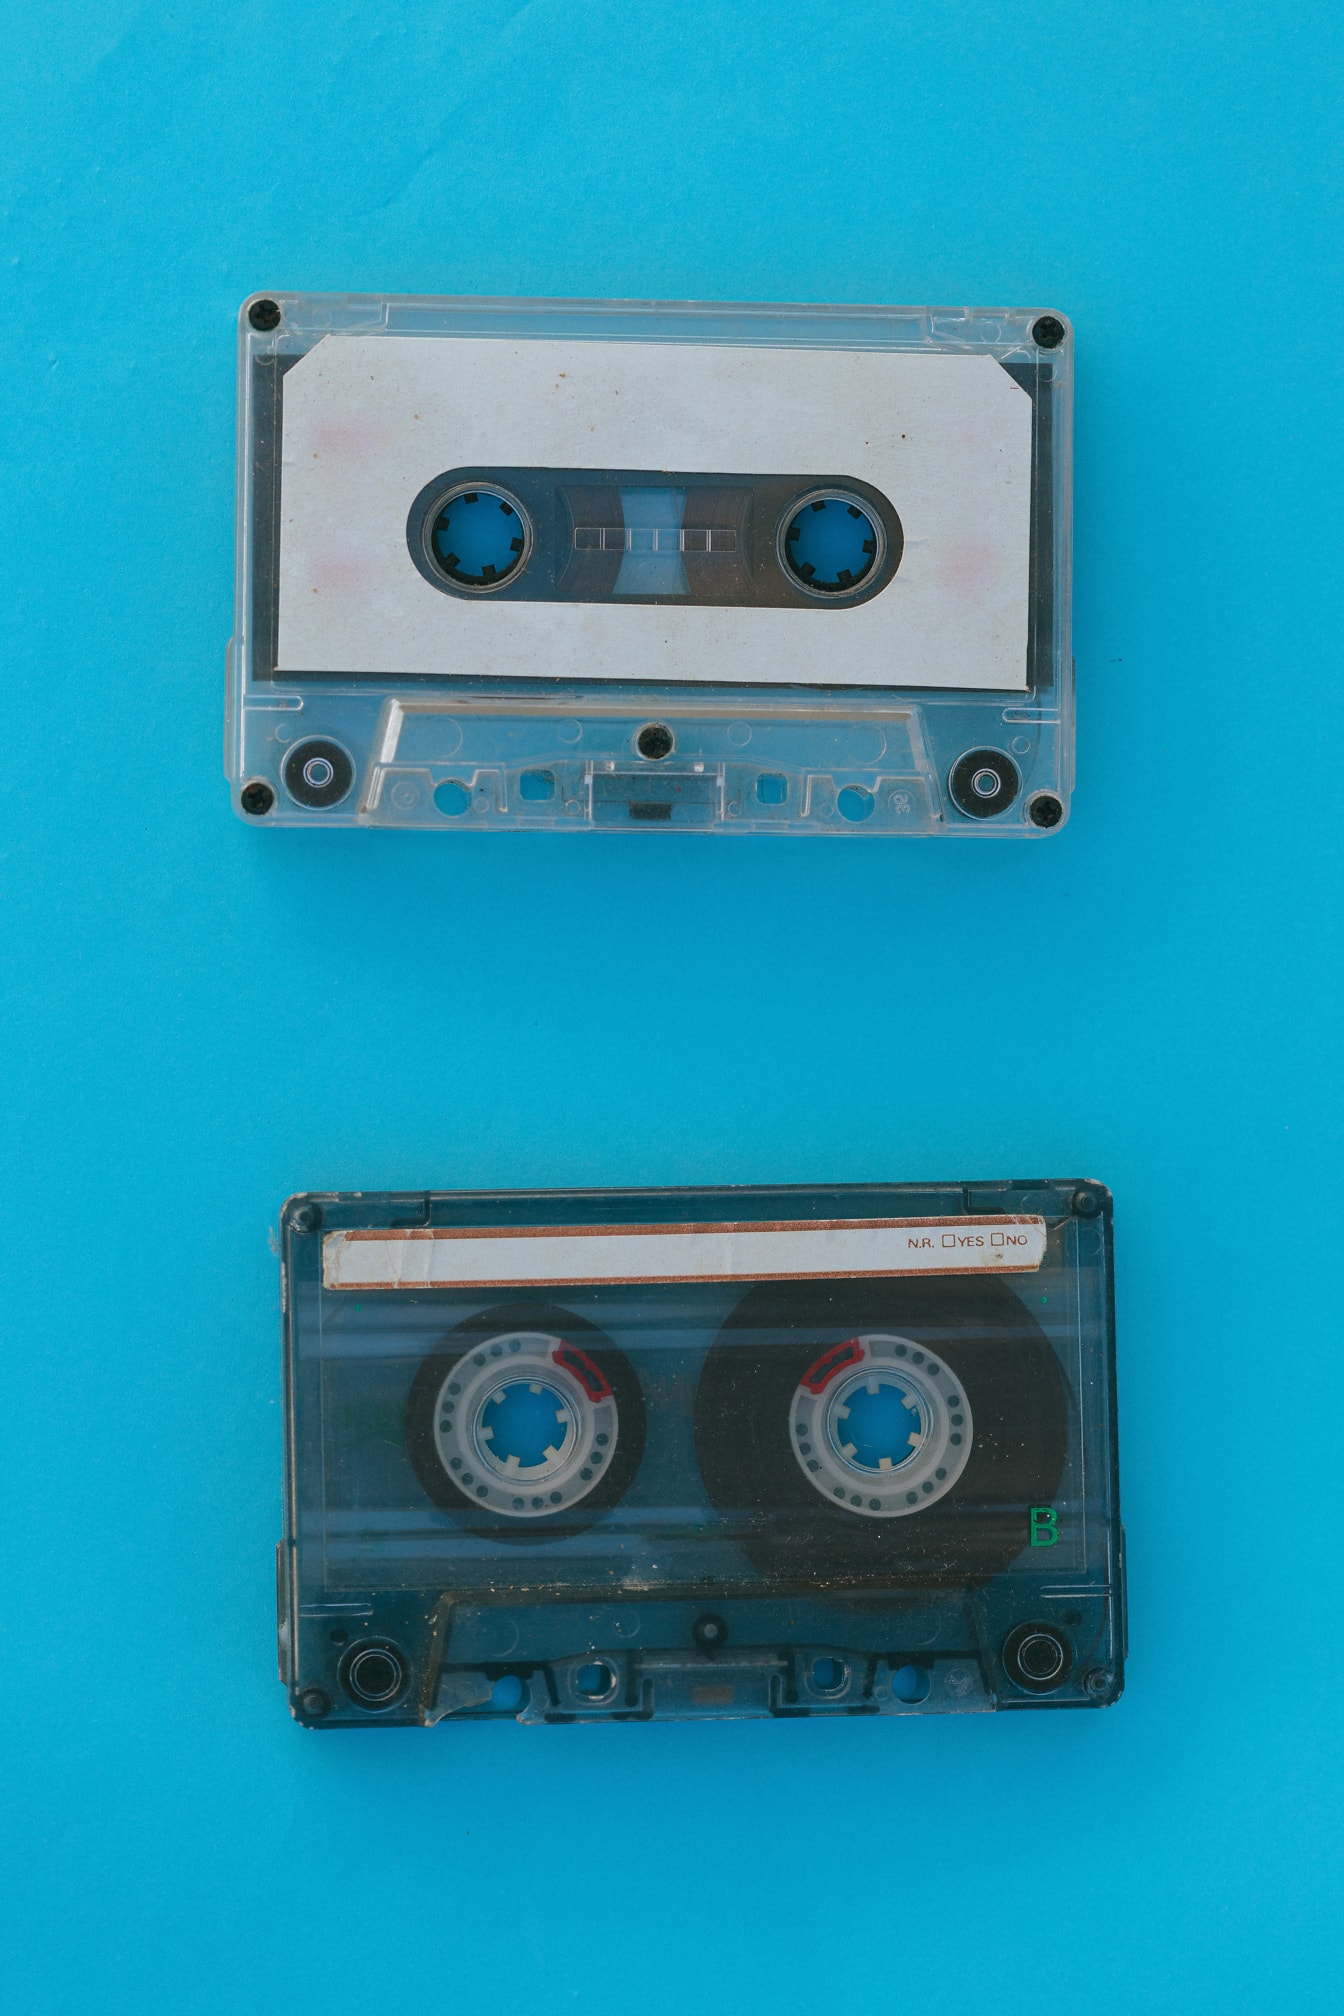 Kaset audio lama dengan latar belakang biru